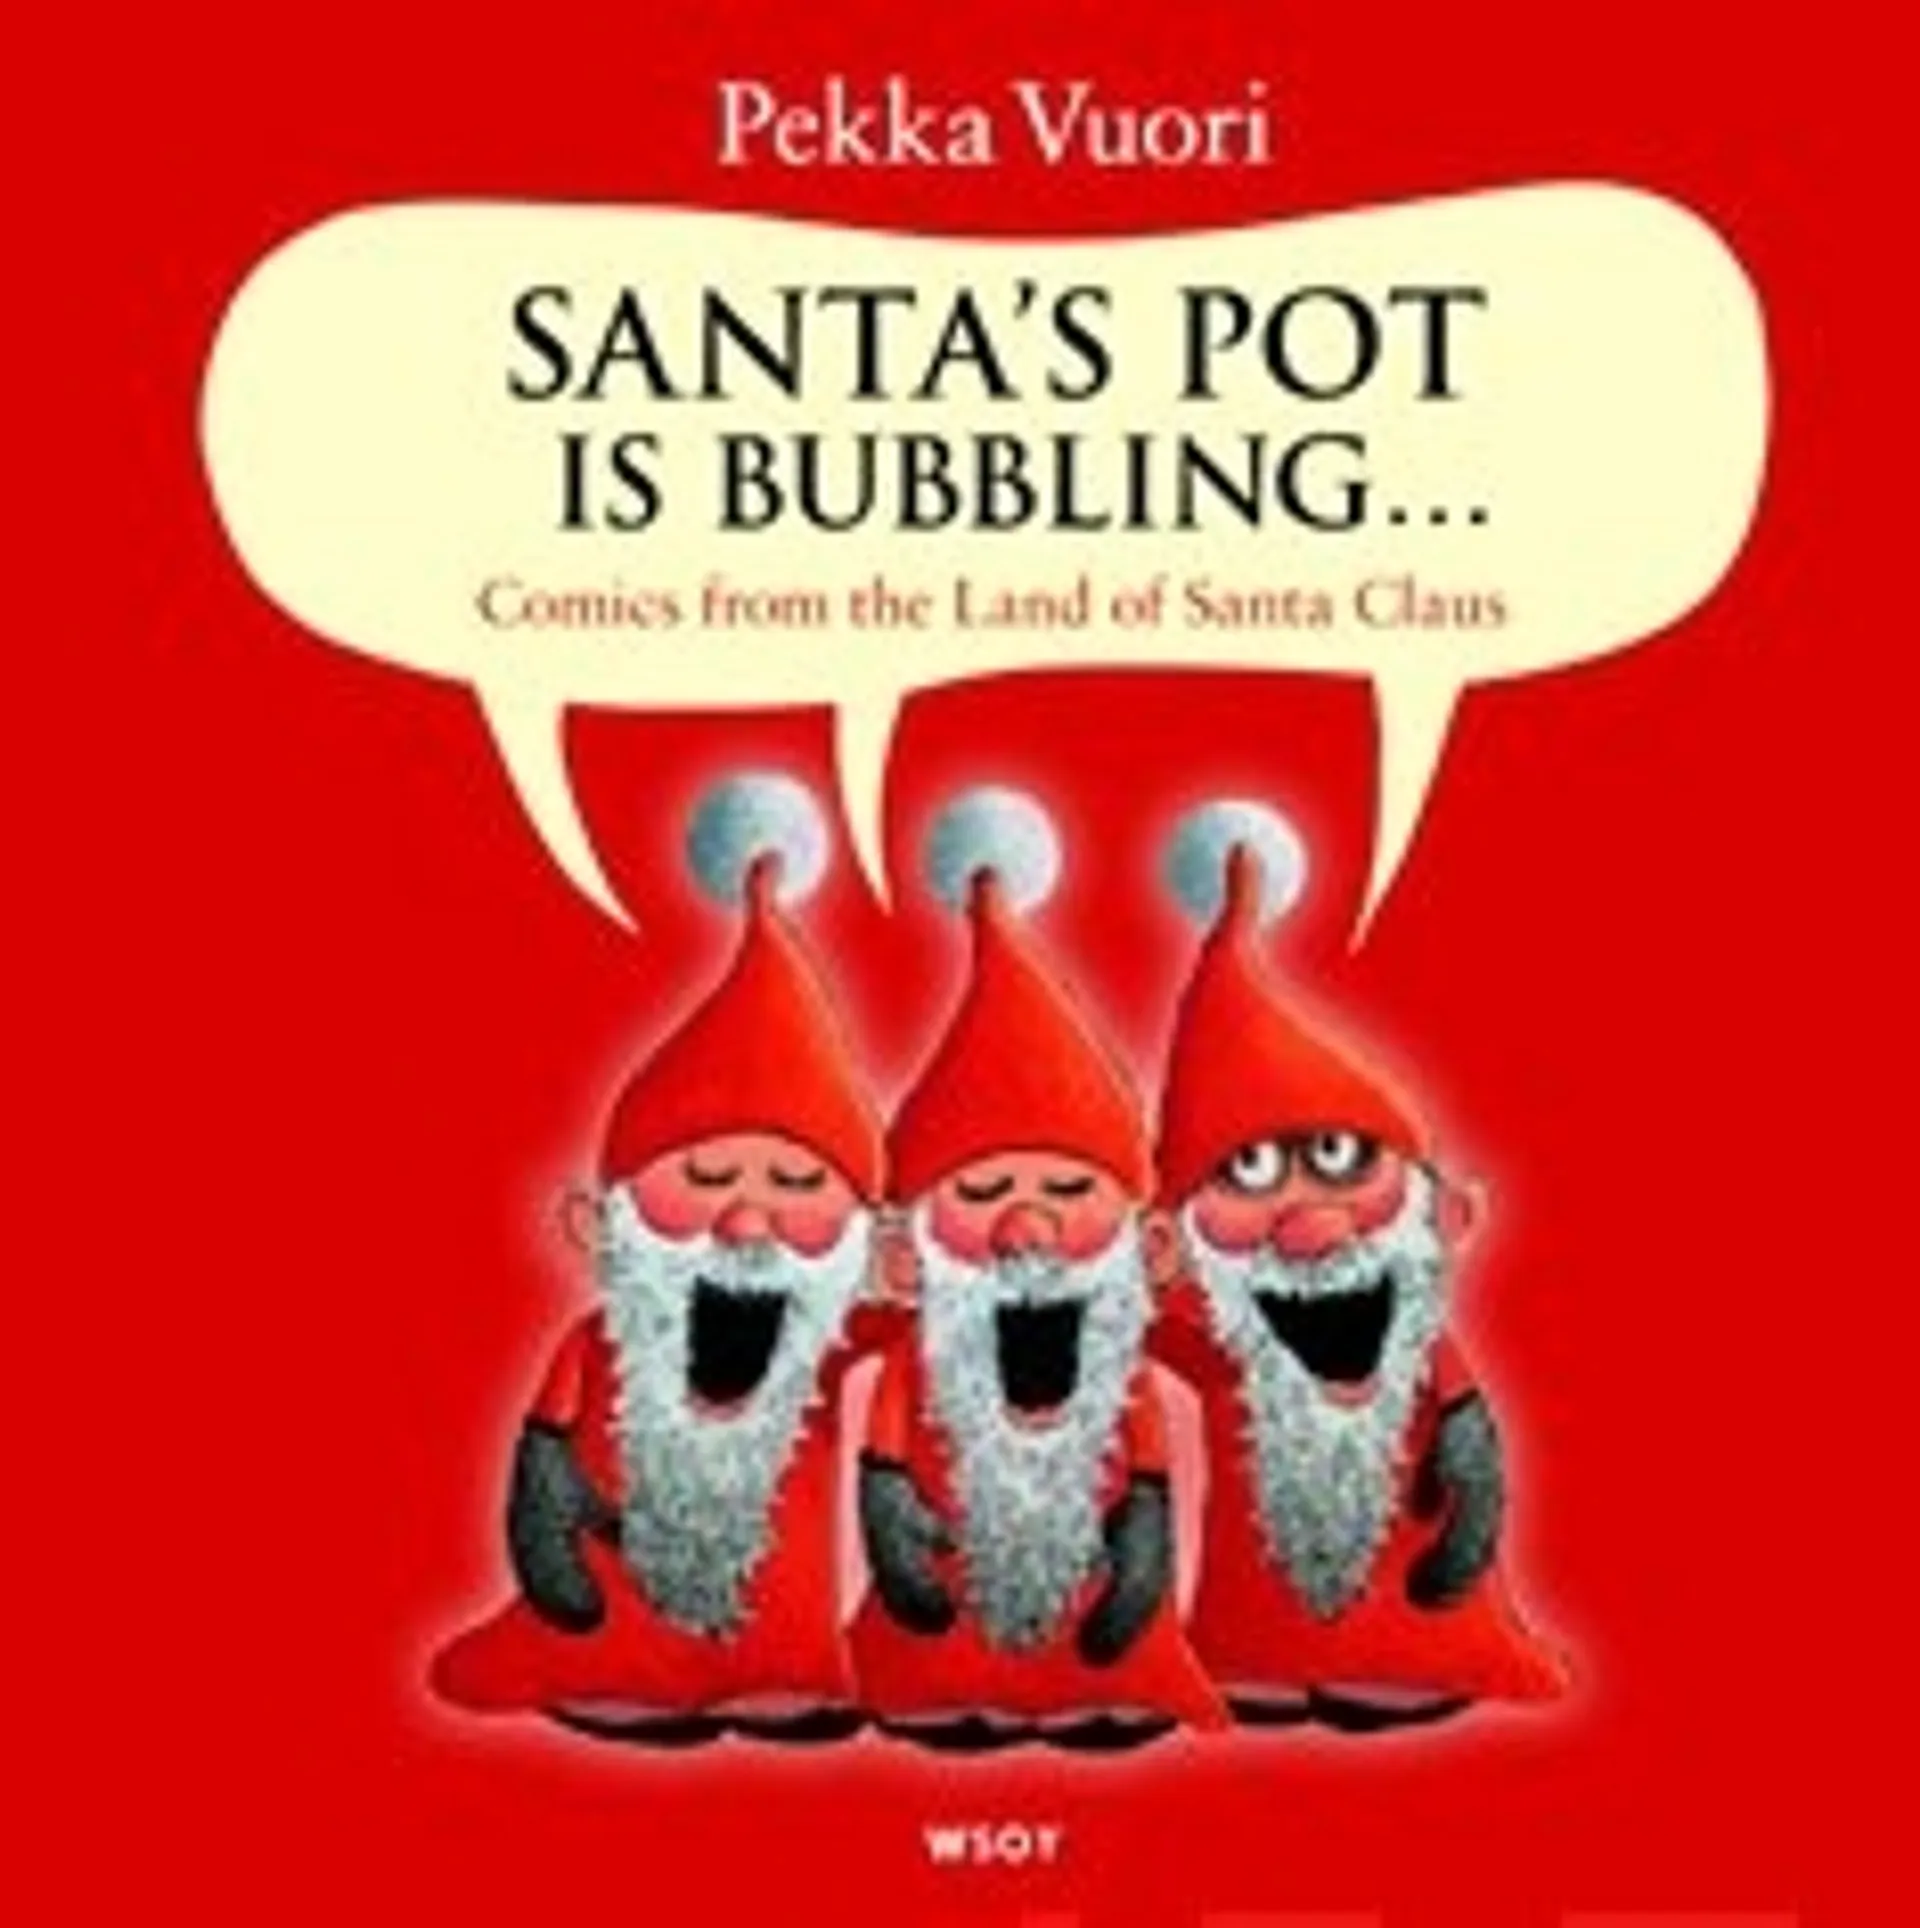 Santas' Pot is bubbling...